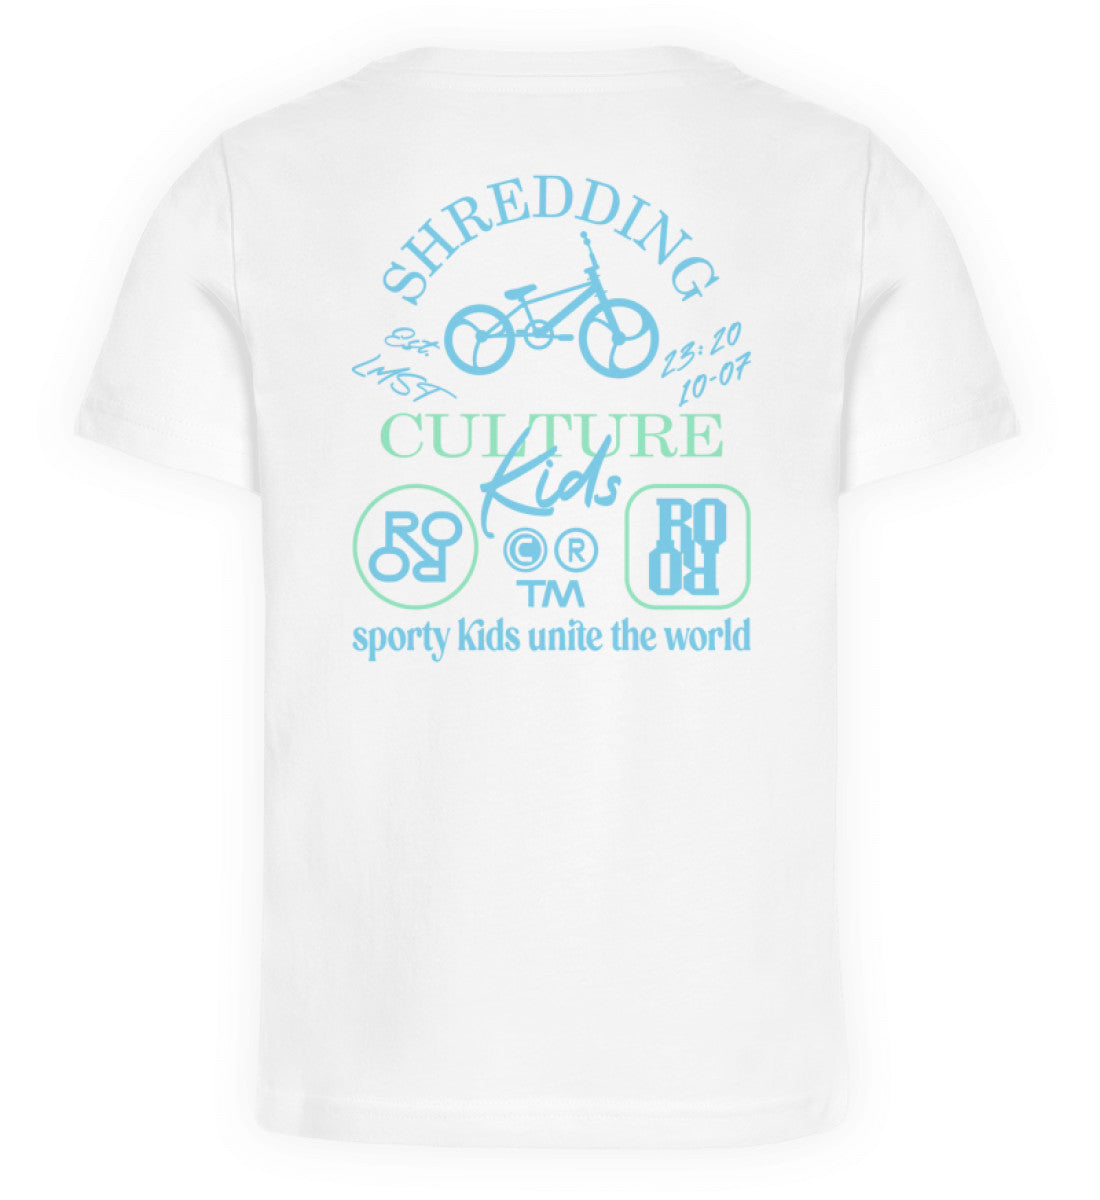 Weißes Kinder T-Shirt für Mädchen und Jungen bedruckt mit dem Design der Roger Rockawoo Kollektion shredding culture kids bmx